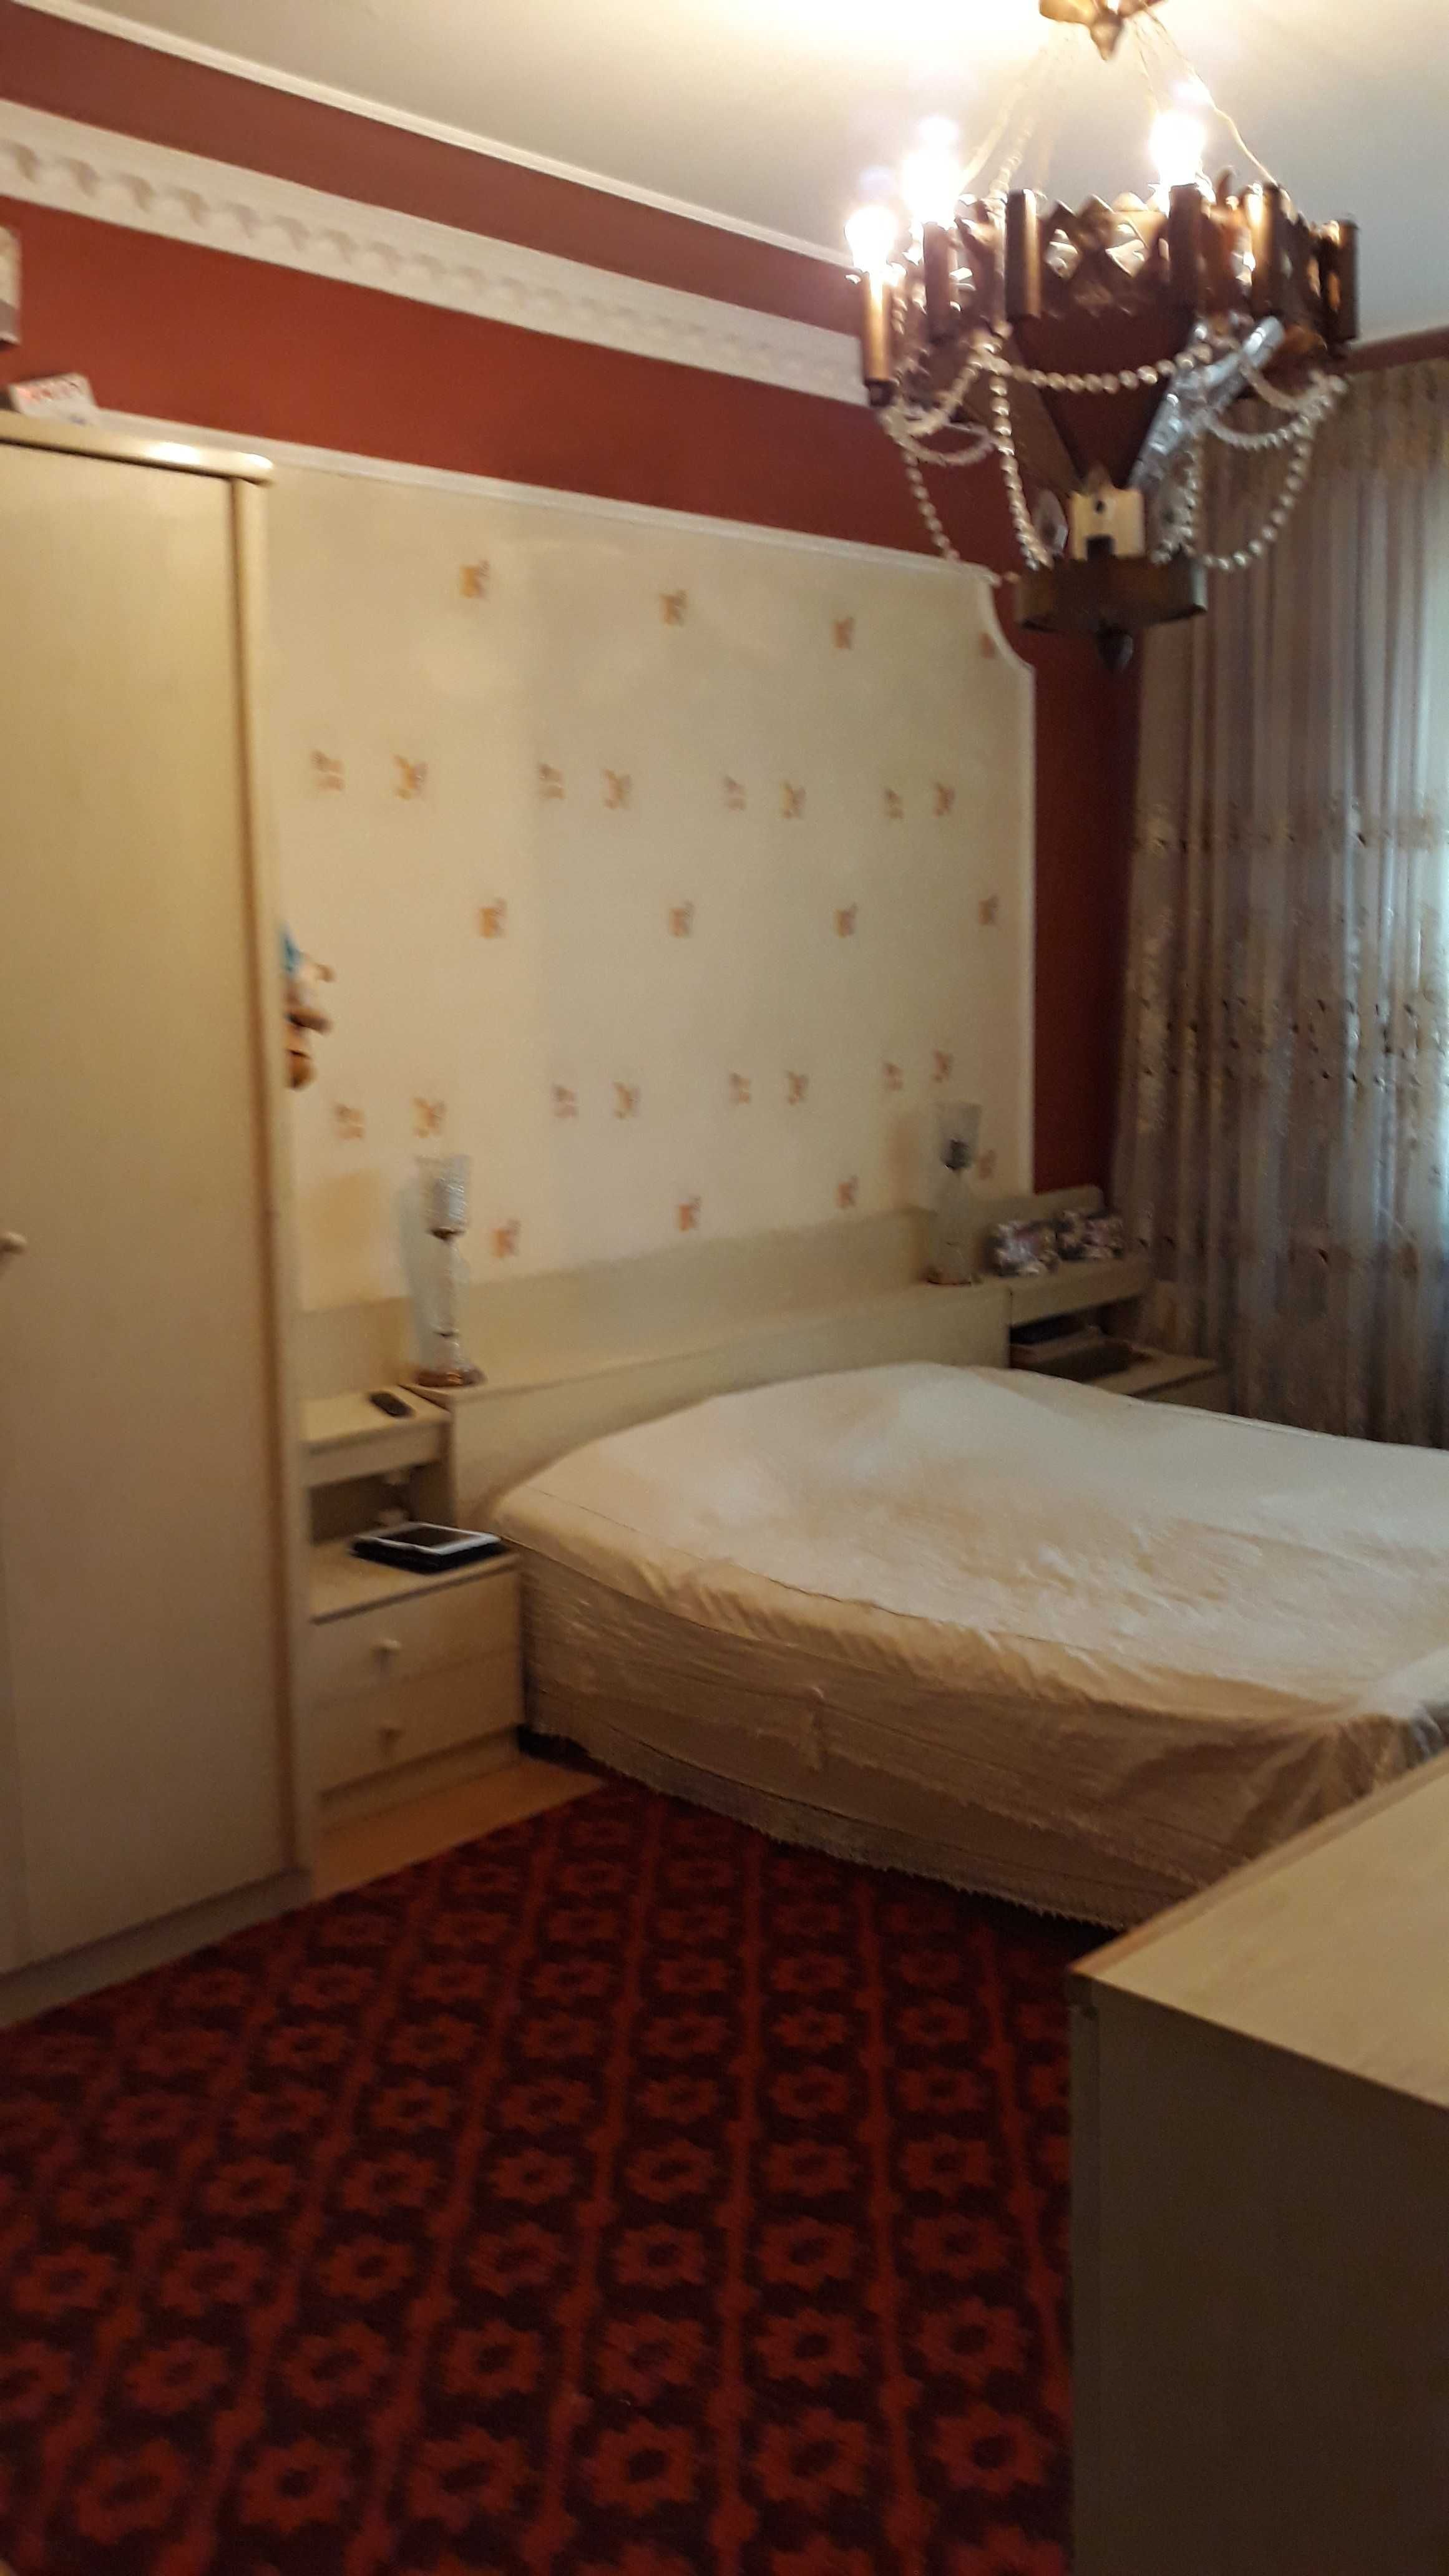 Продается  4-х комнатная  квартира  в  Учтепинском  районе 11.